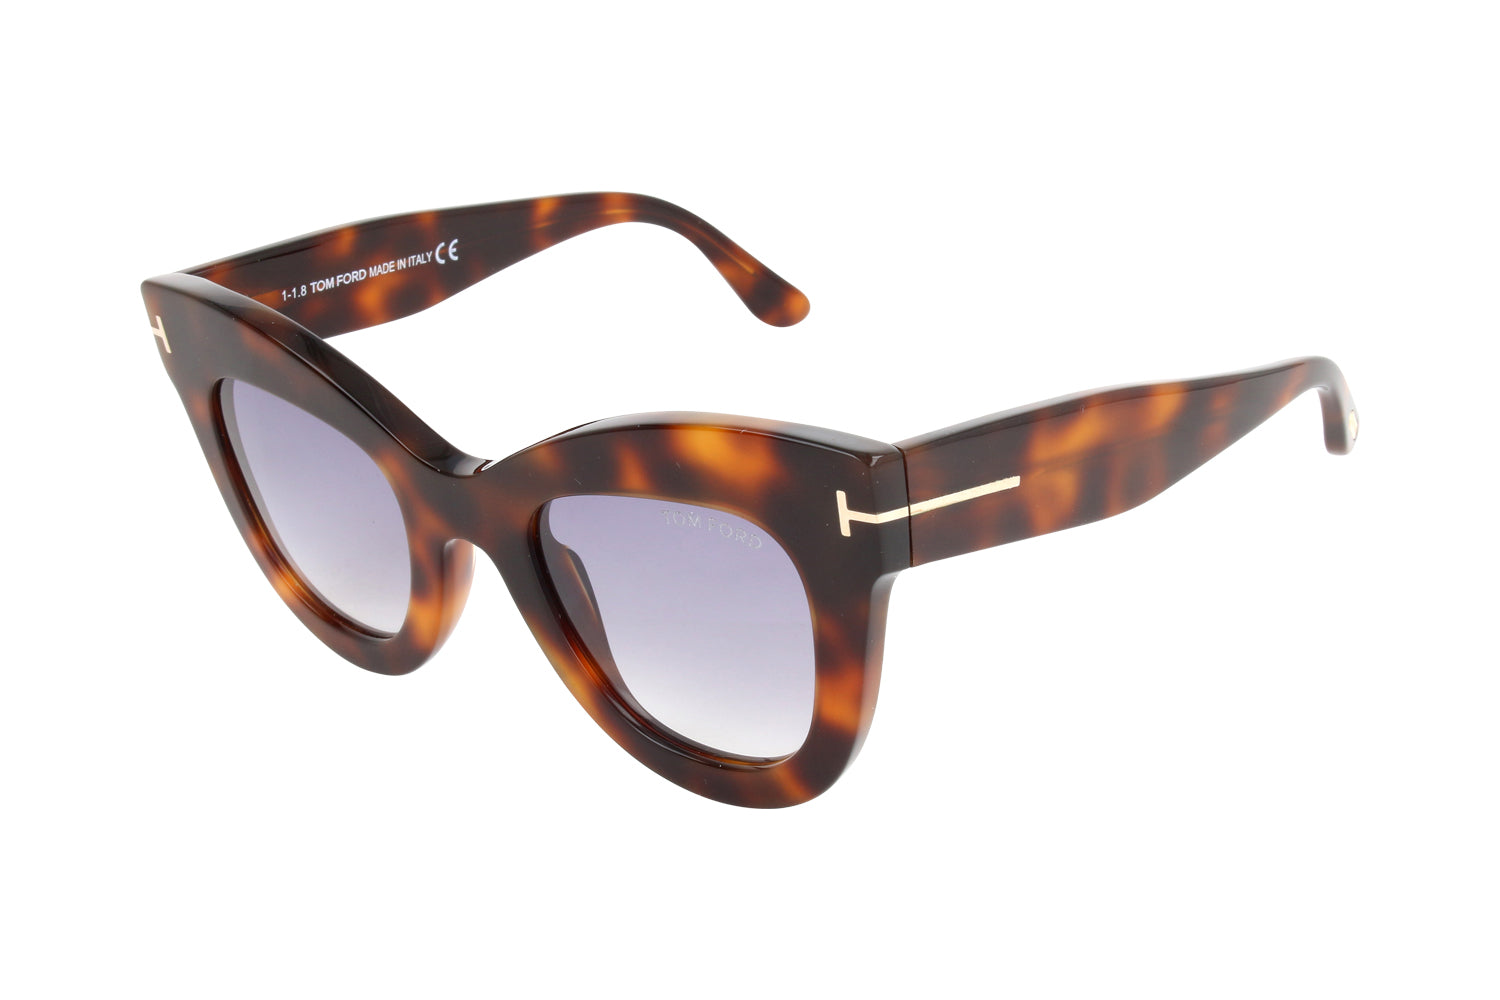 Tom Ford FT0612 47mm Sunglasses – Designer Glasses by Noa